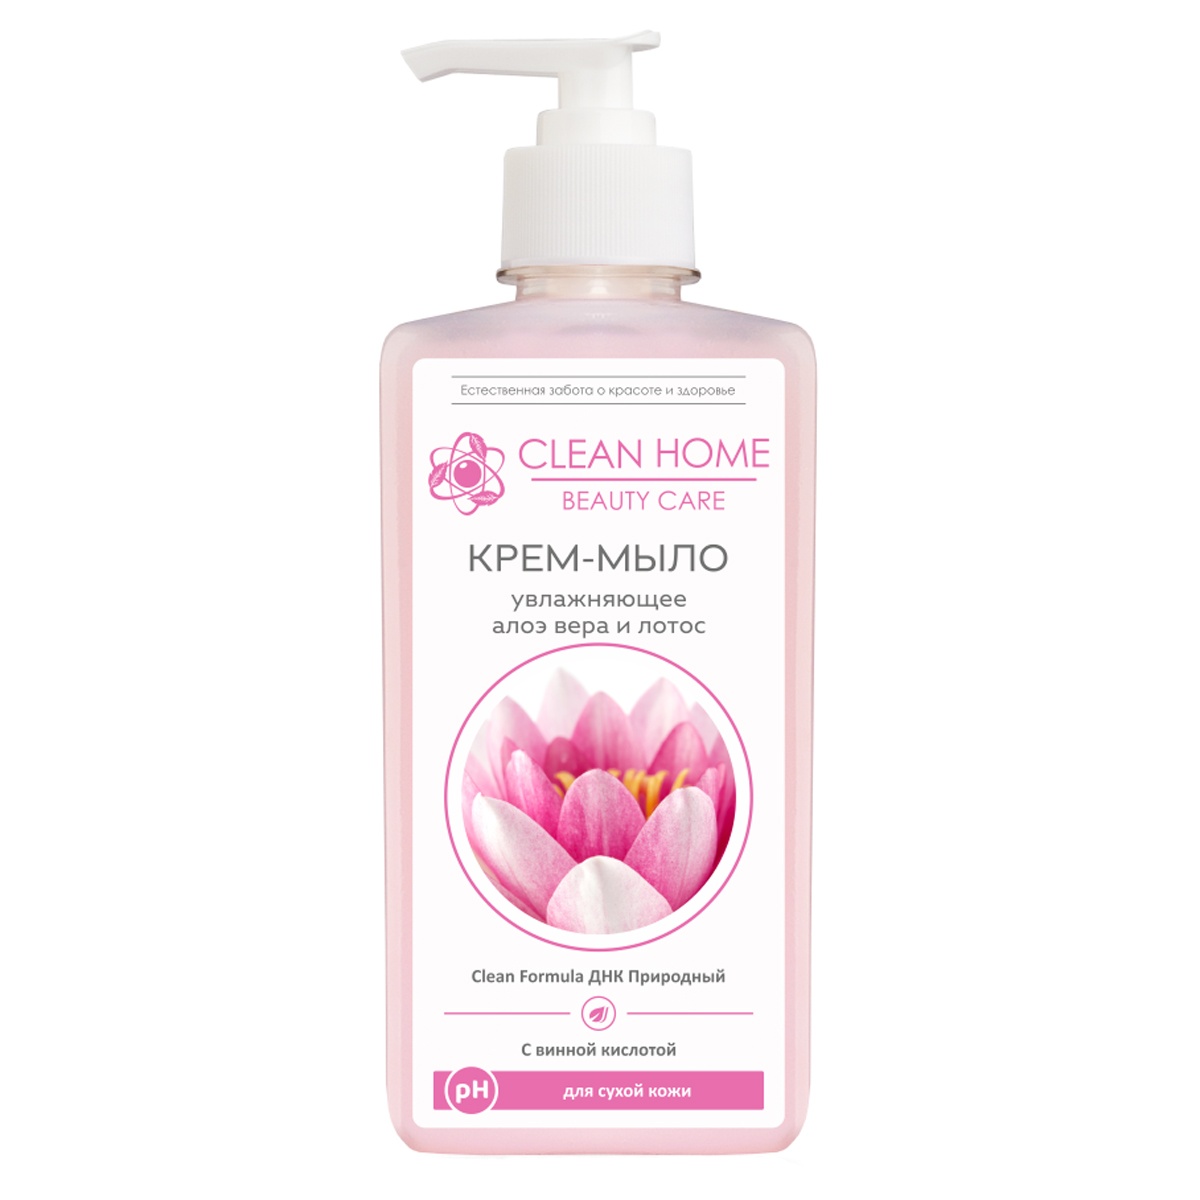 Крем-мыло для рук Clean Home Beauty Care Увлажняющее anti acne крем тинт с эффектом сияния тон светлый 30г